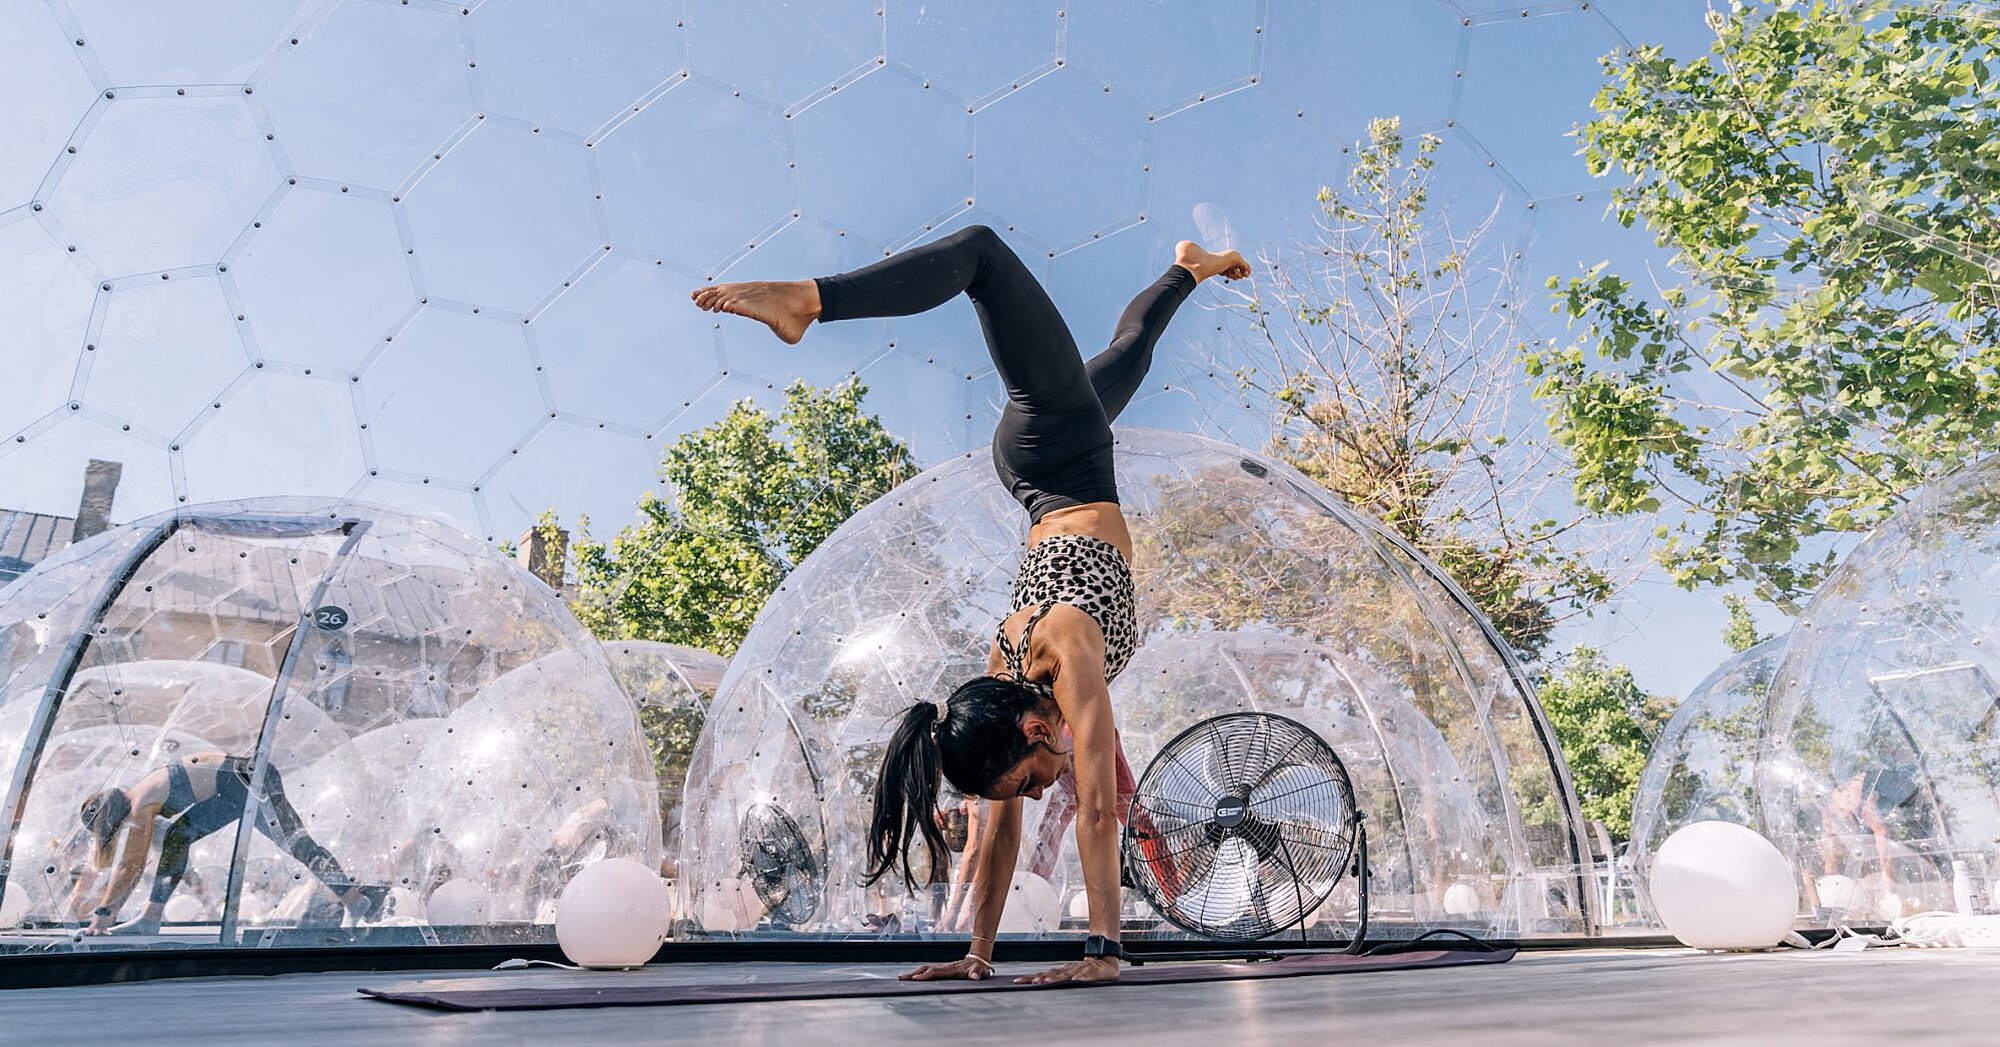 Puedes tomar una clase de yoga caliente en tu propia cúpula de burbujas en este estudio al aire libre.